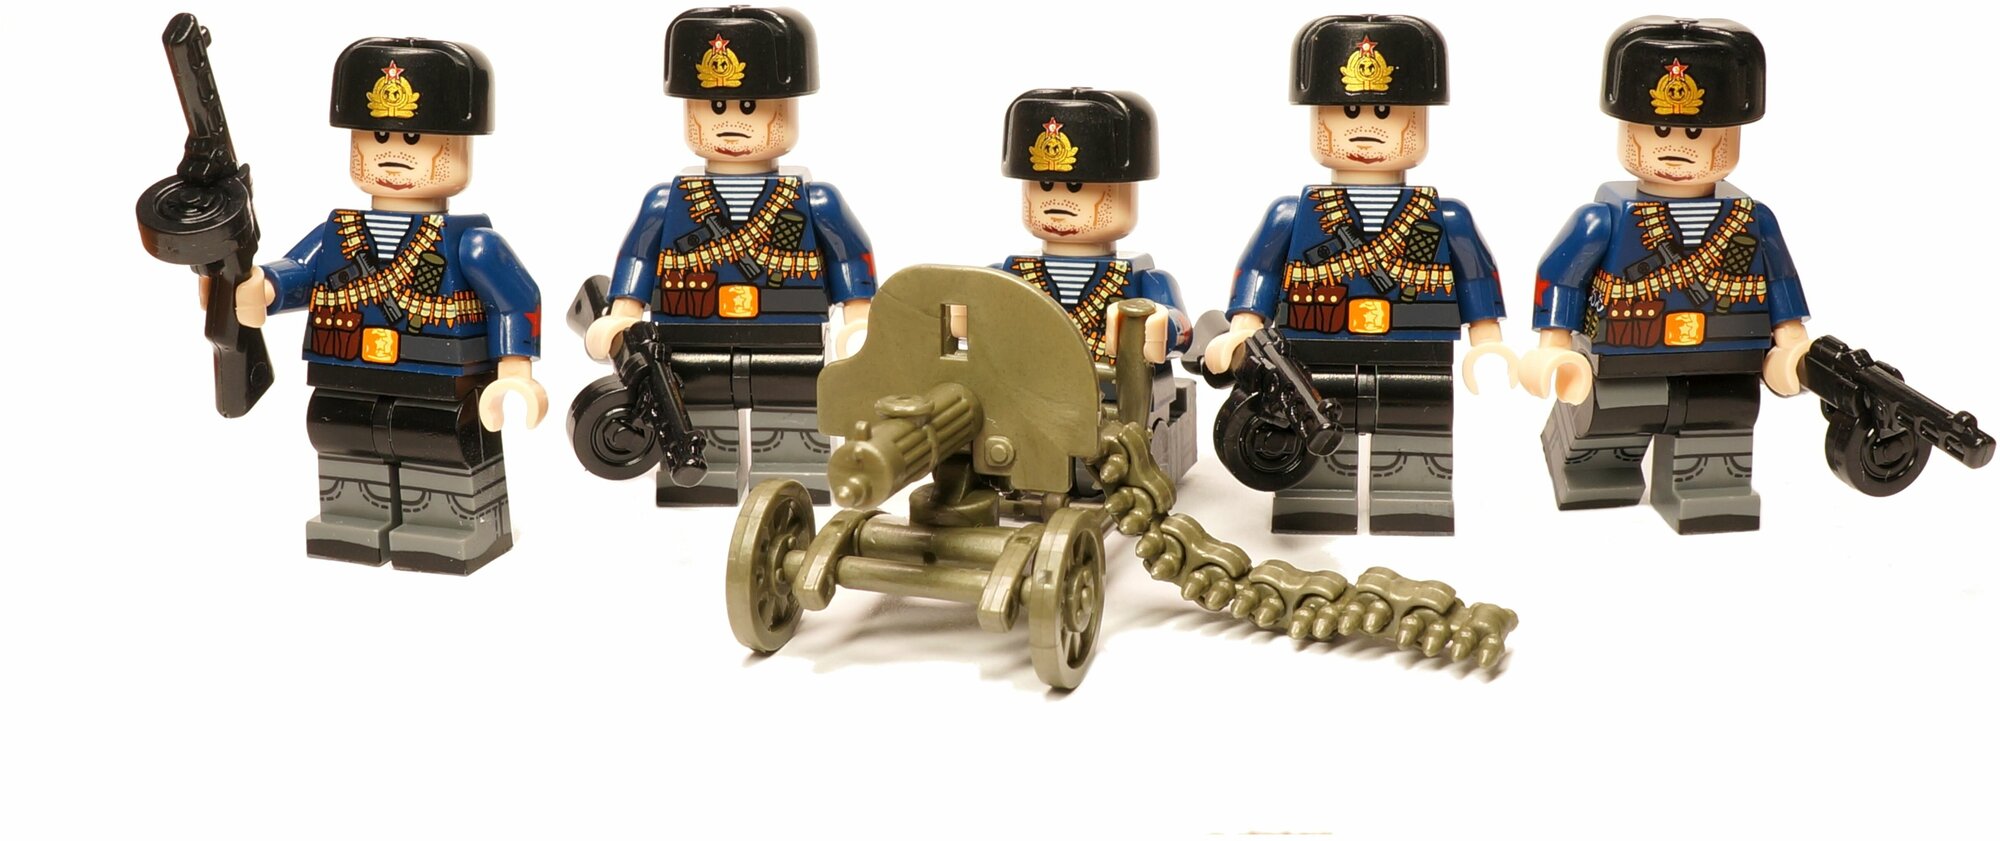 Набор солдатиков Великая Отечественная Война 5 штук с пулеметом Максим, набор военных человечков, военный конструктор, солдаты, армия совместимая с Лего (4,5 см, пакет)